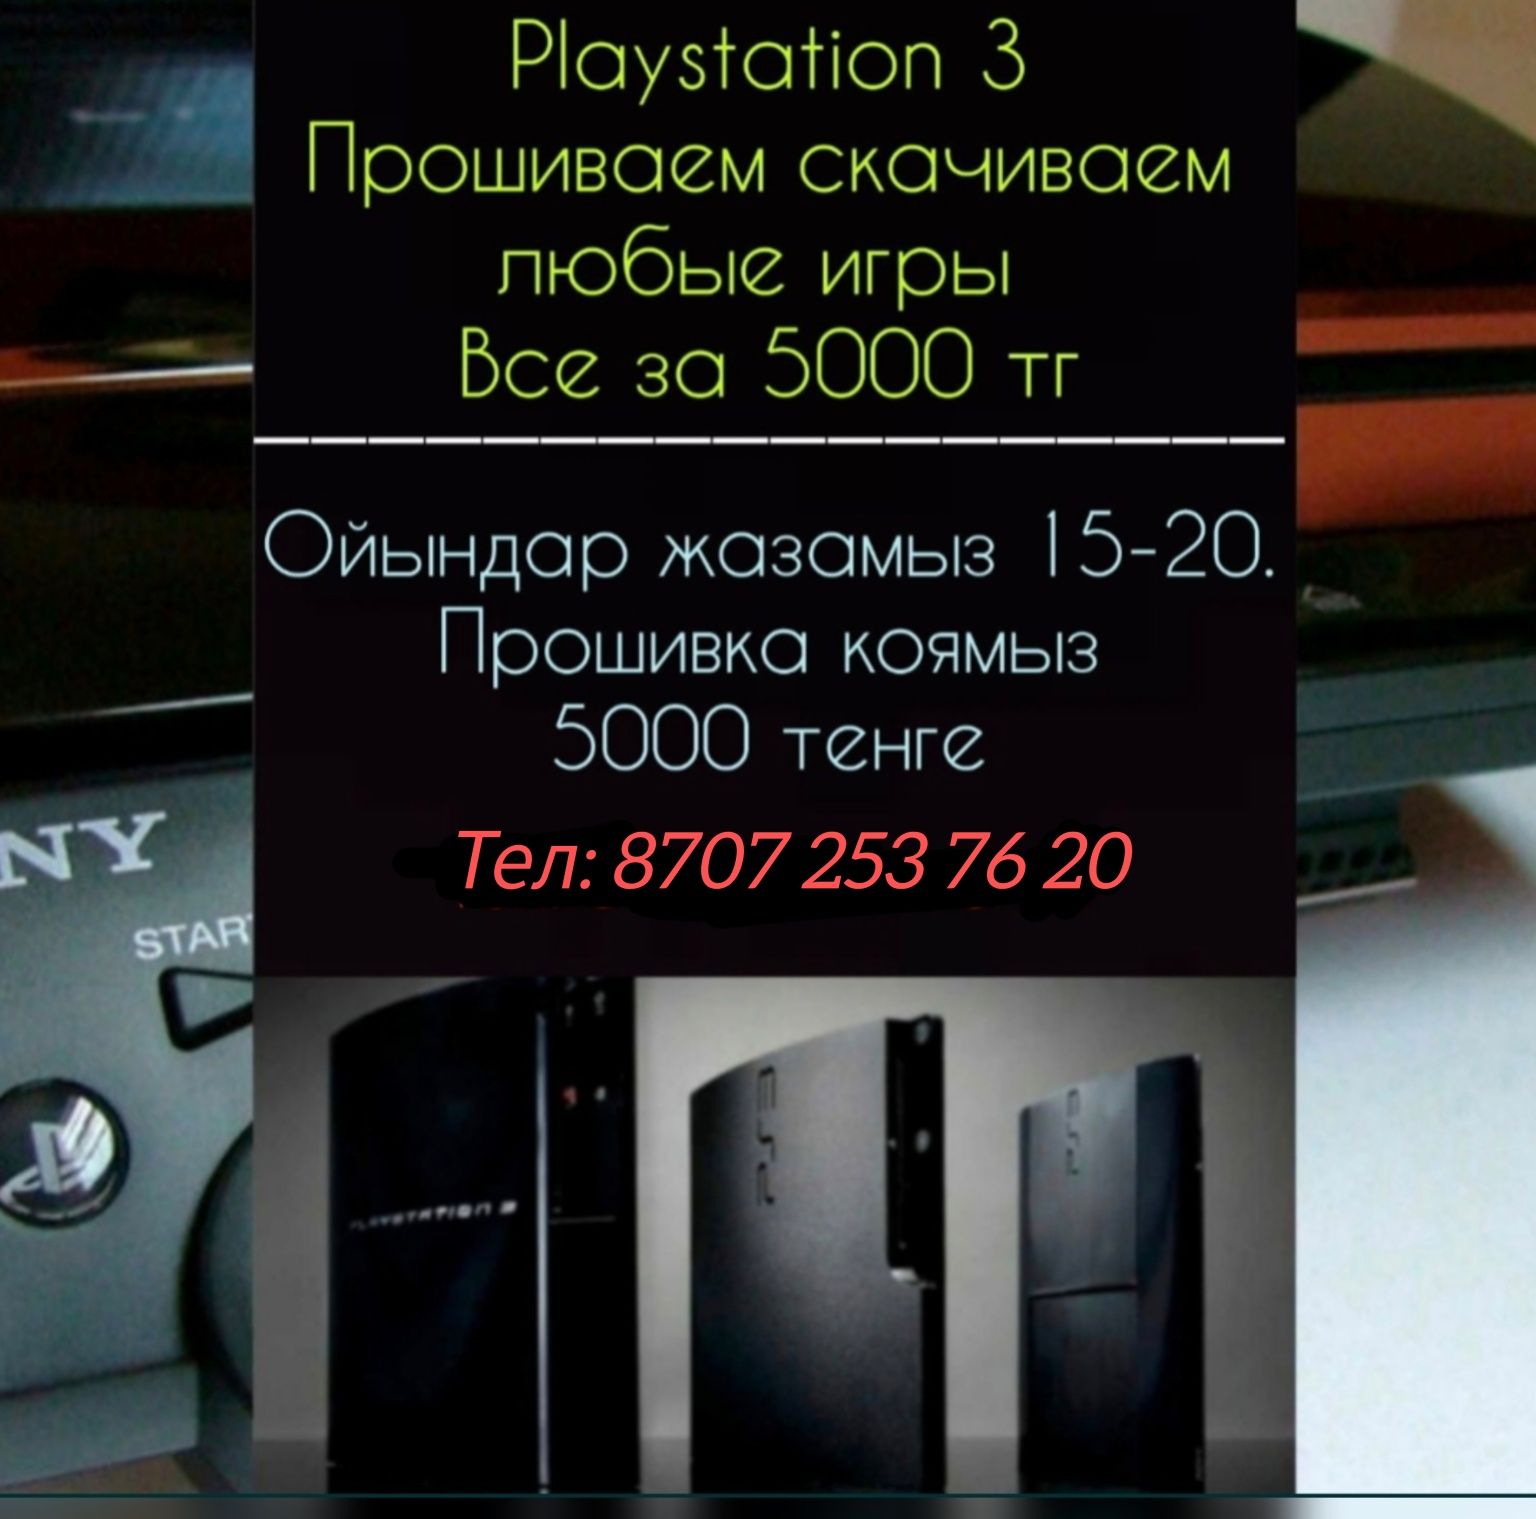 Playstation 3 ps3 установка игры